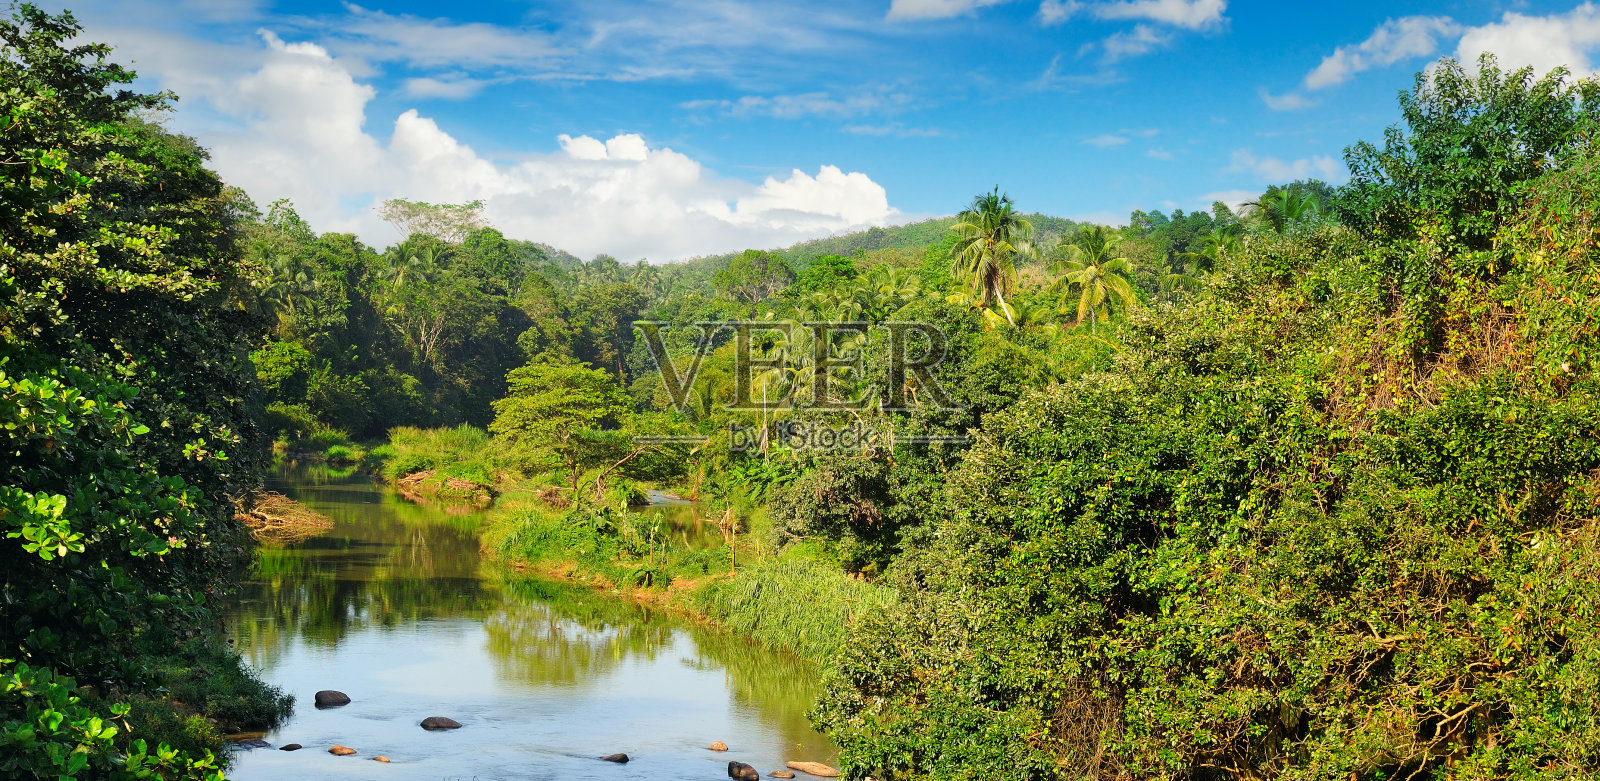 河岸边的热带森林和蔚蓝多云的天空照片摄影图片